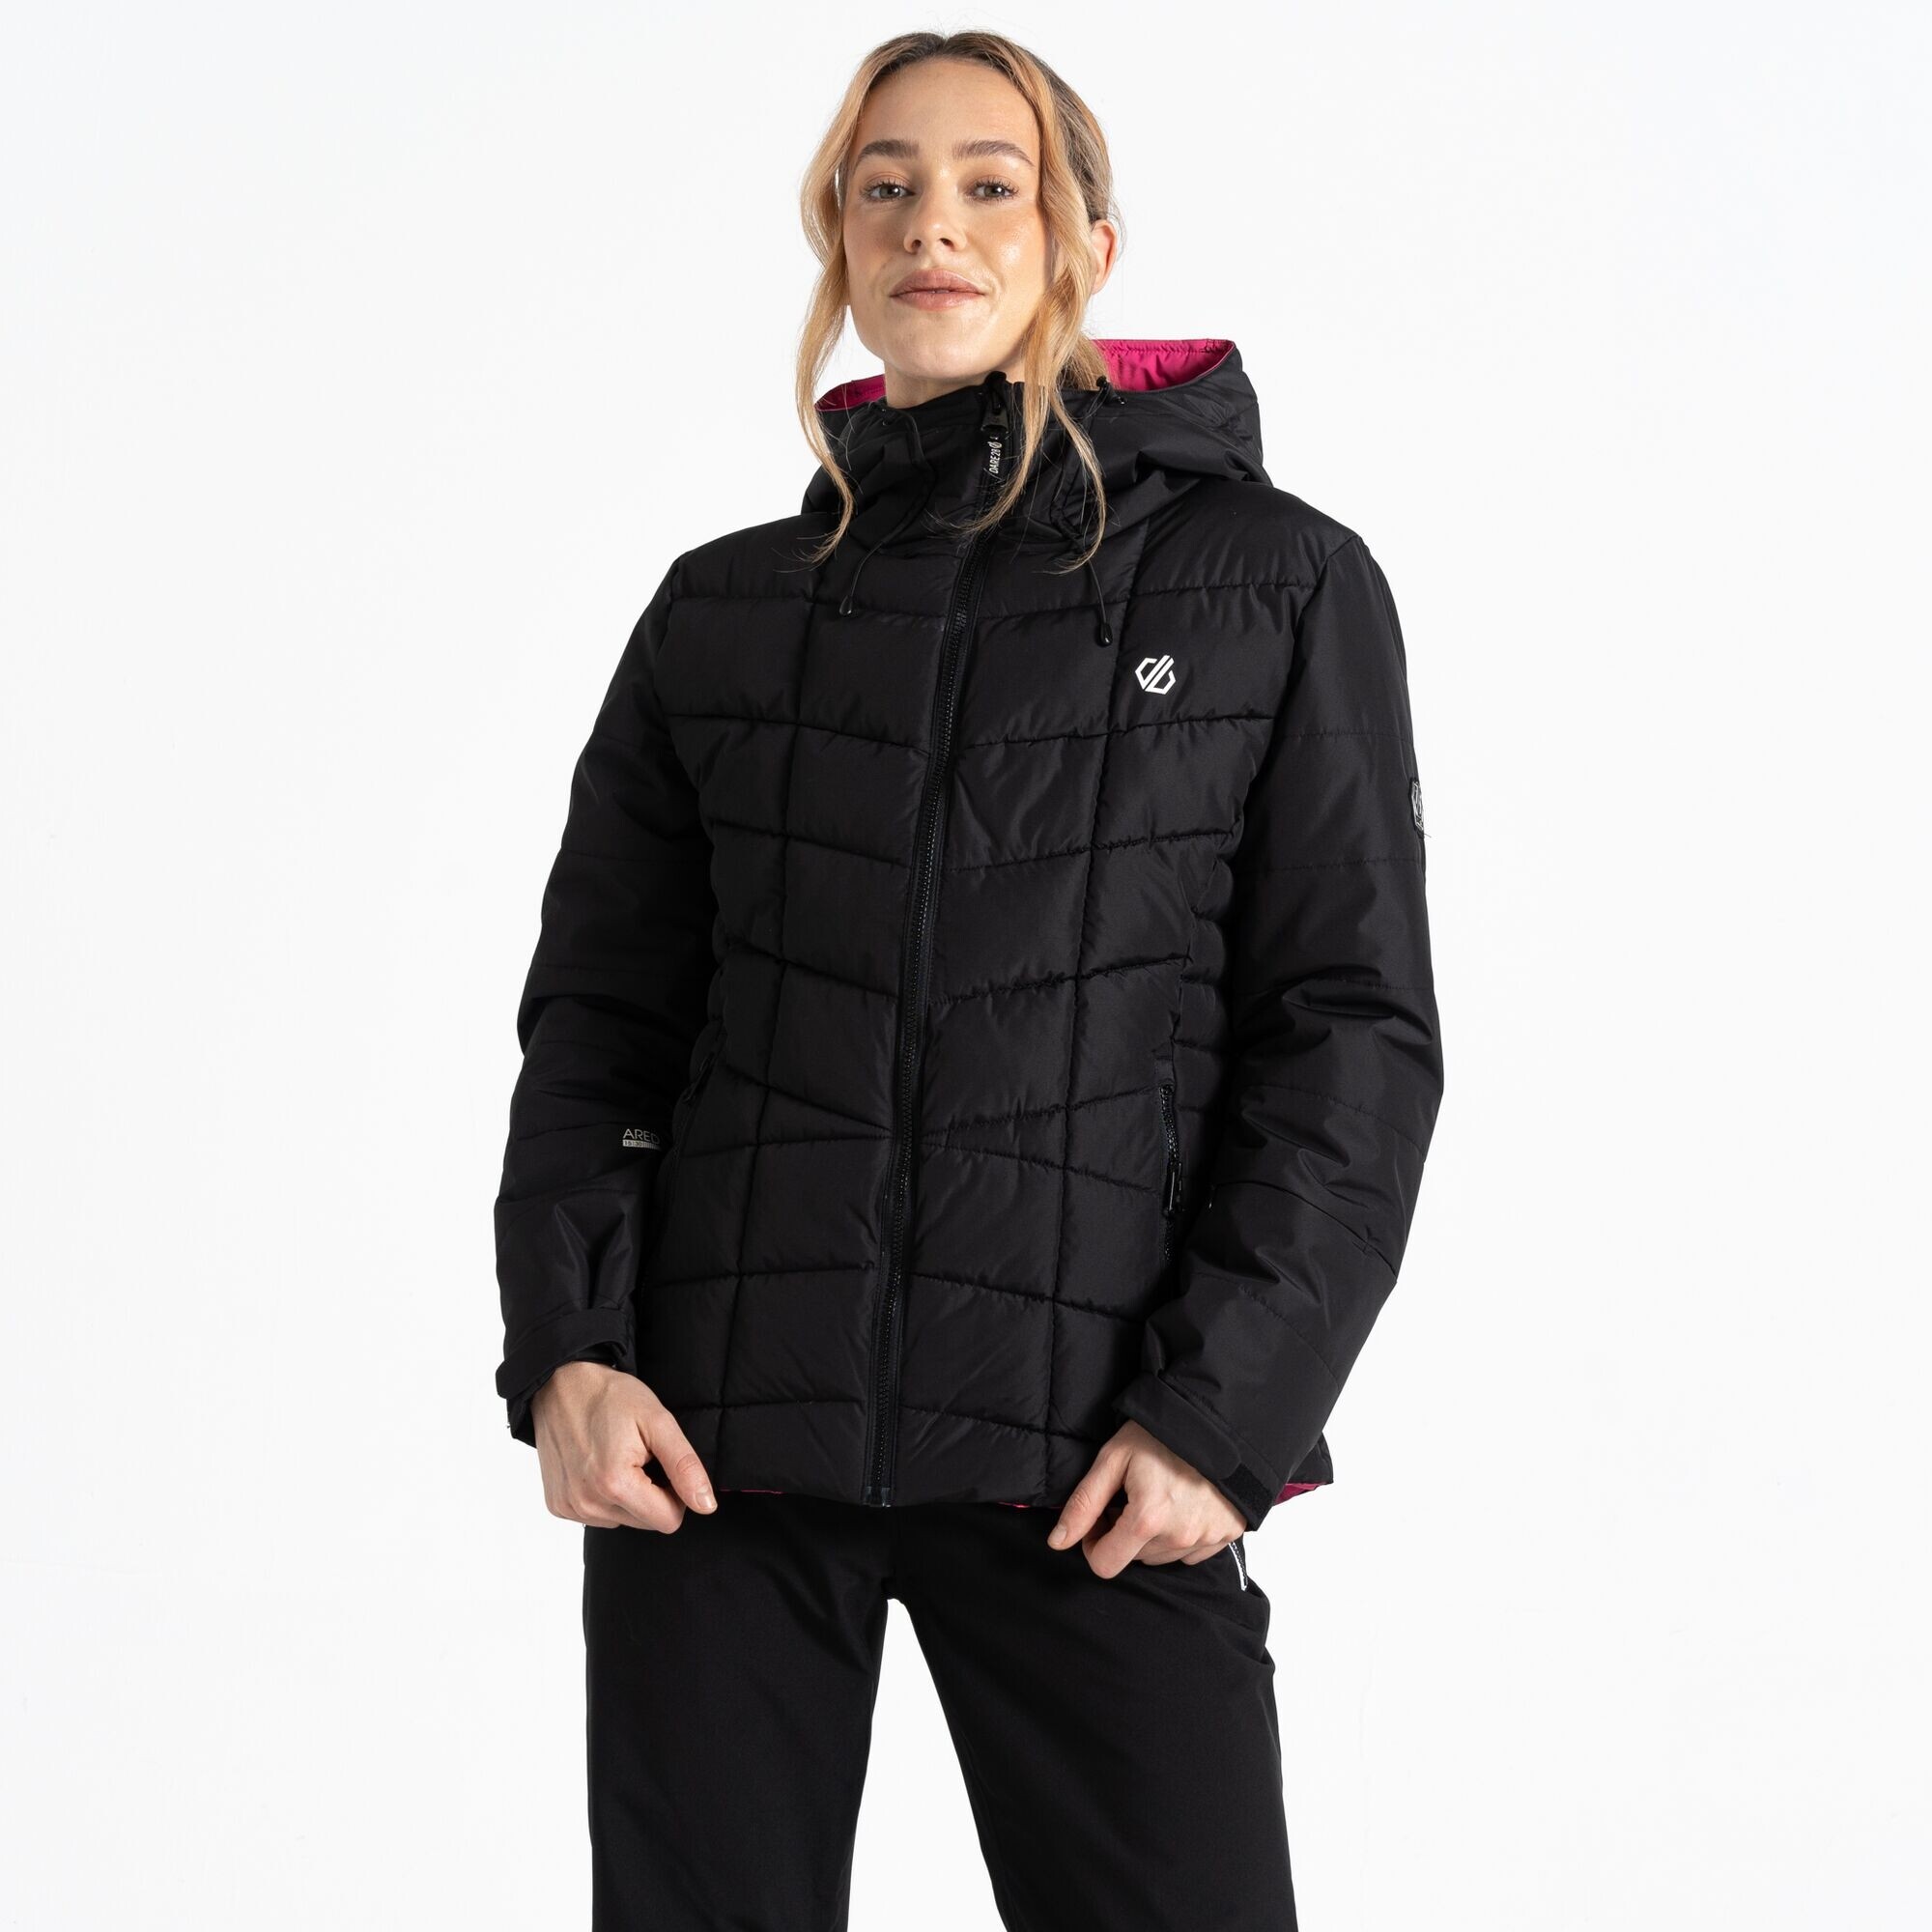 Dámská lyžařská bunda Blindside Jacket DWP569-800 černá - Dare2B 40